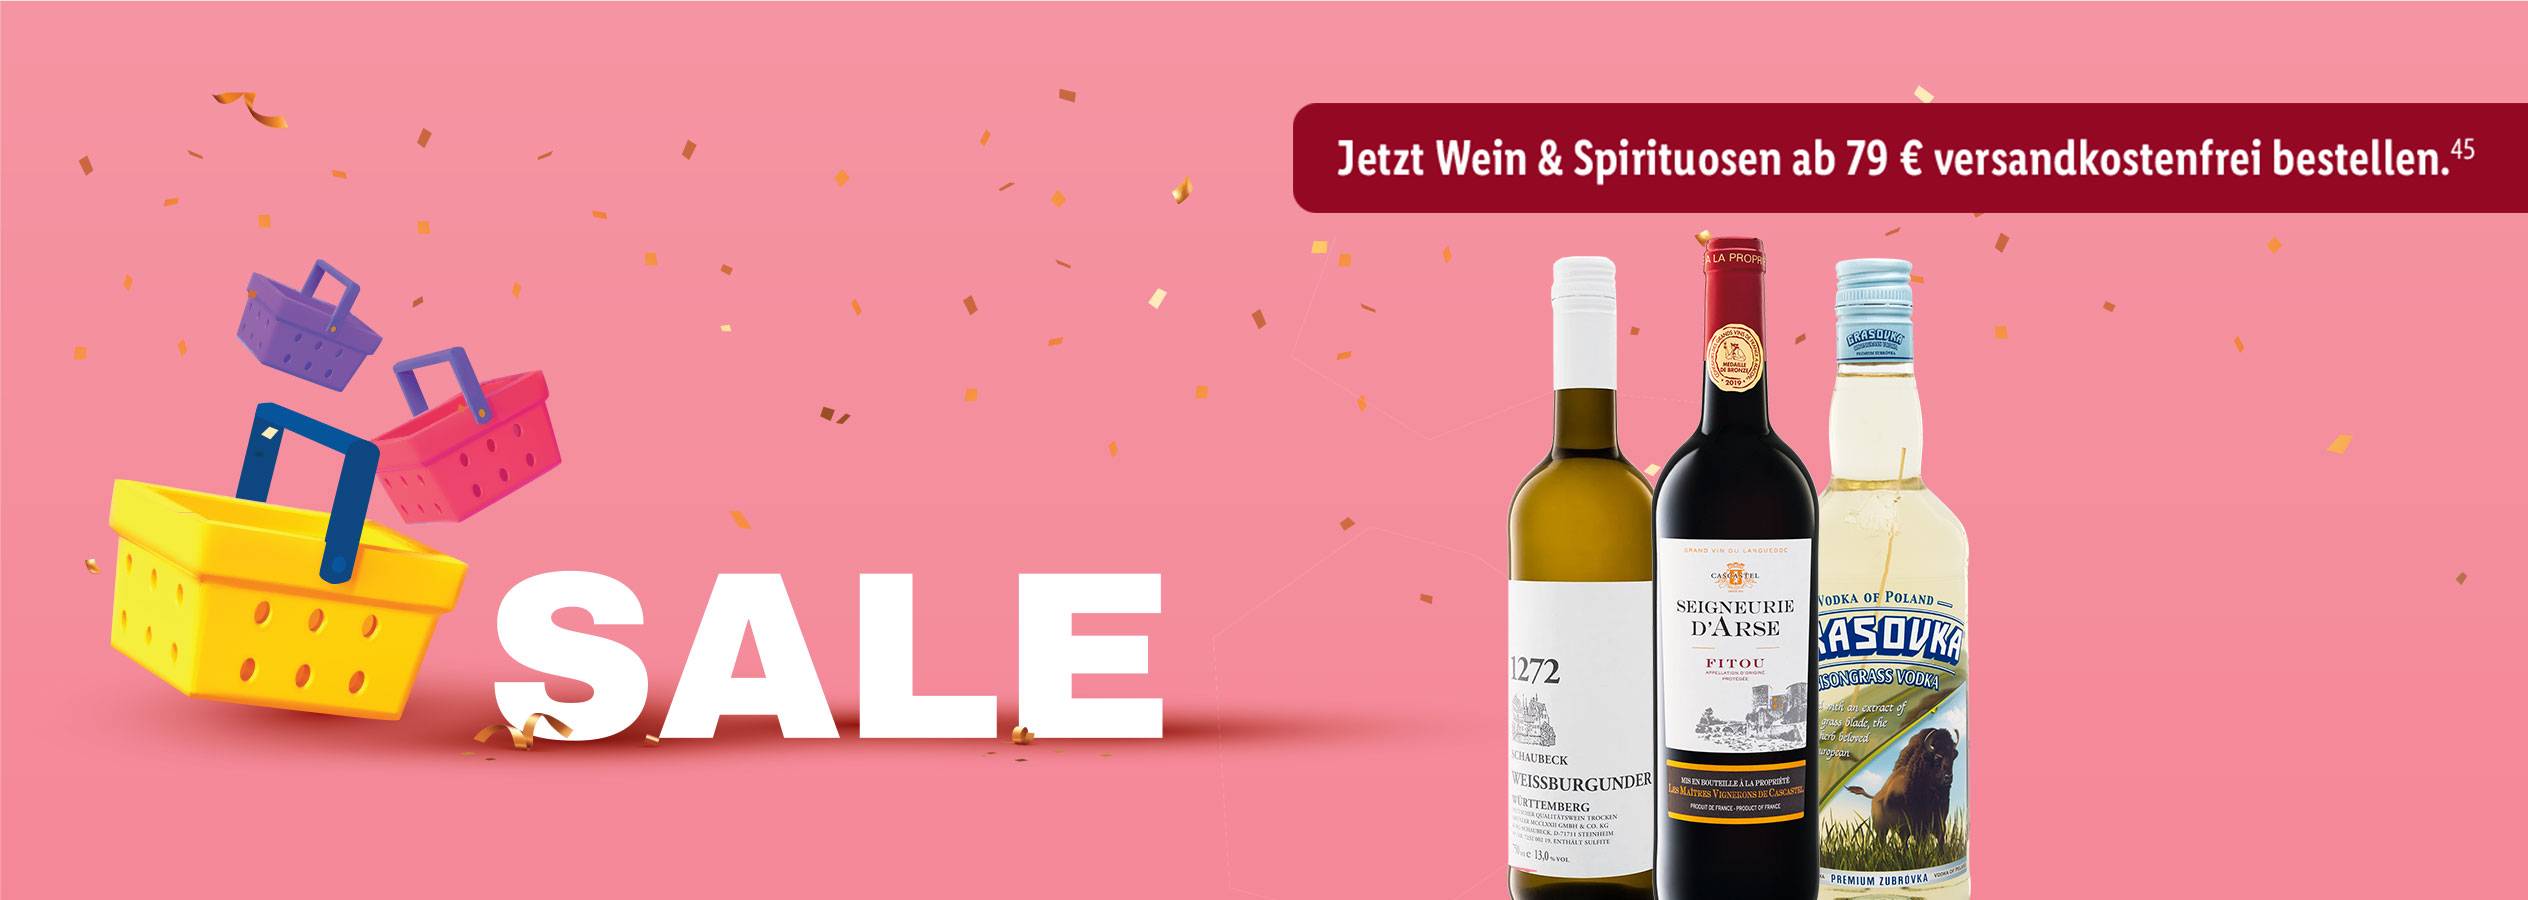 SALE Wein & Spirituosen